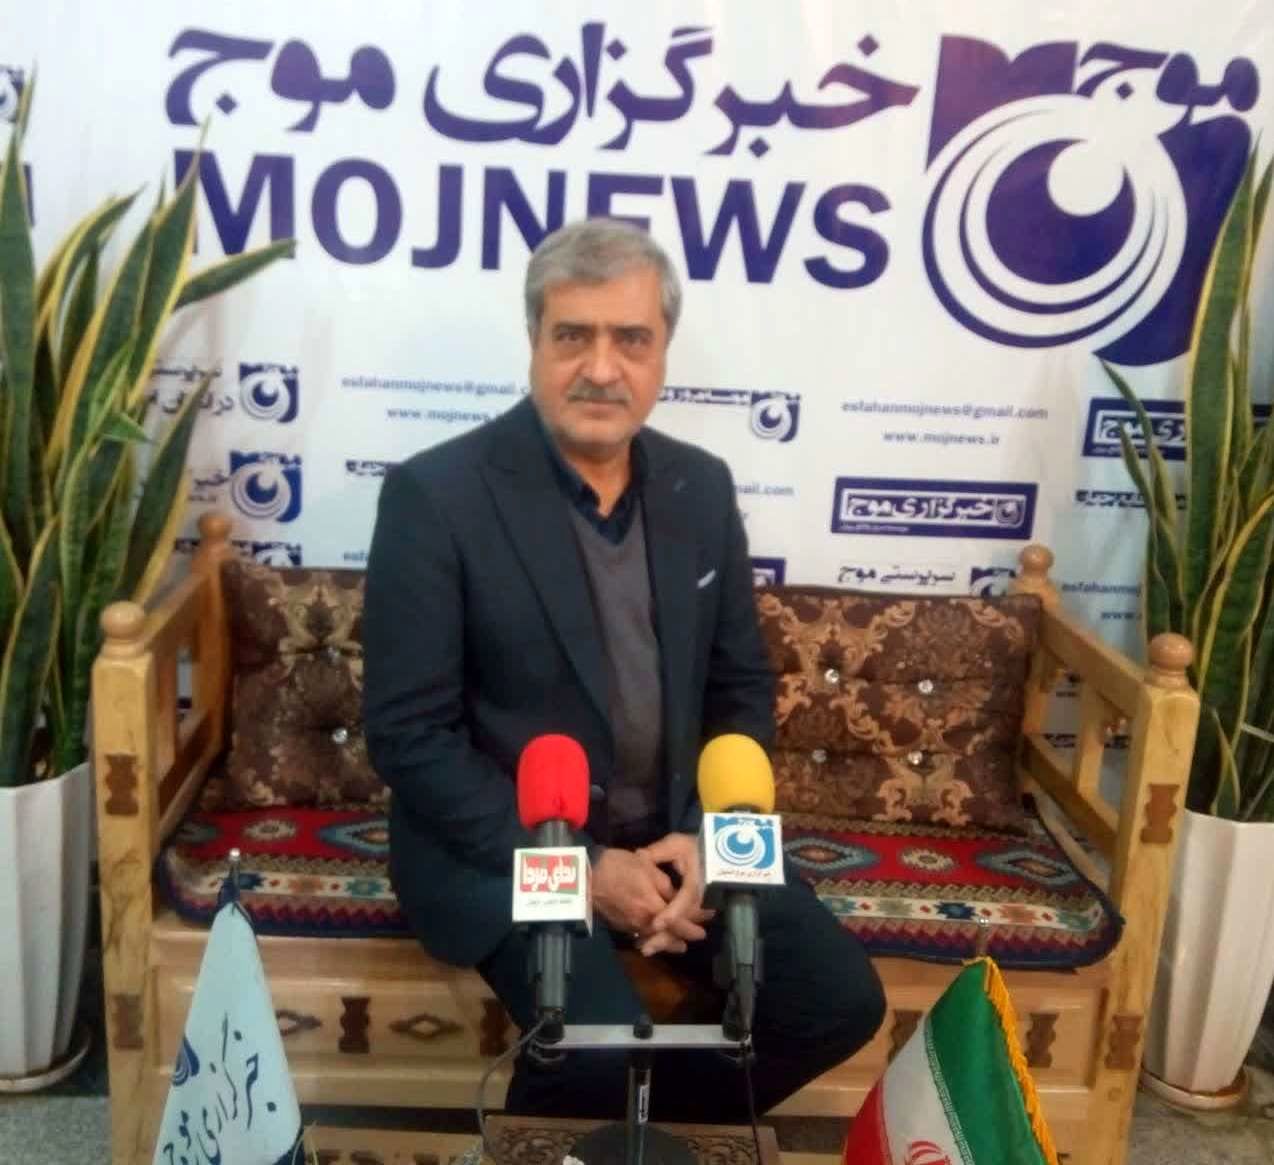 بازدید مدیر منطقه ۵ شهرداری اصفهان از دفتر خبرگزاری موج